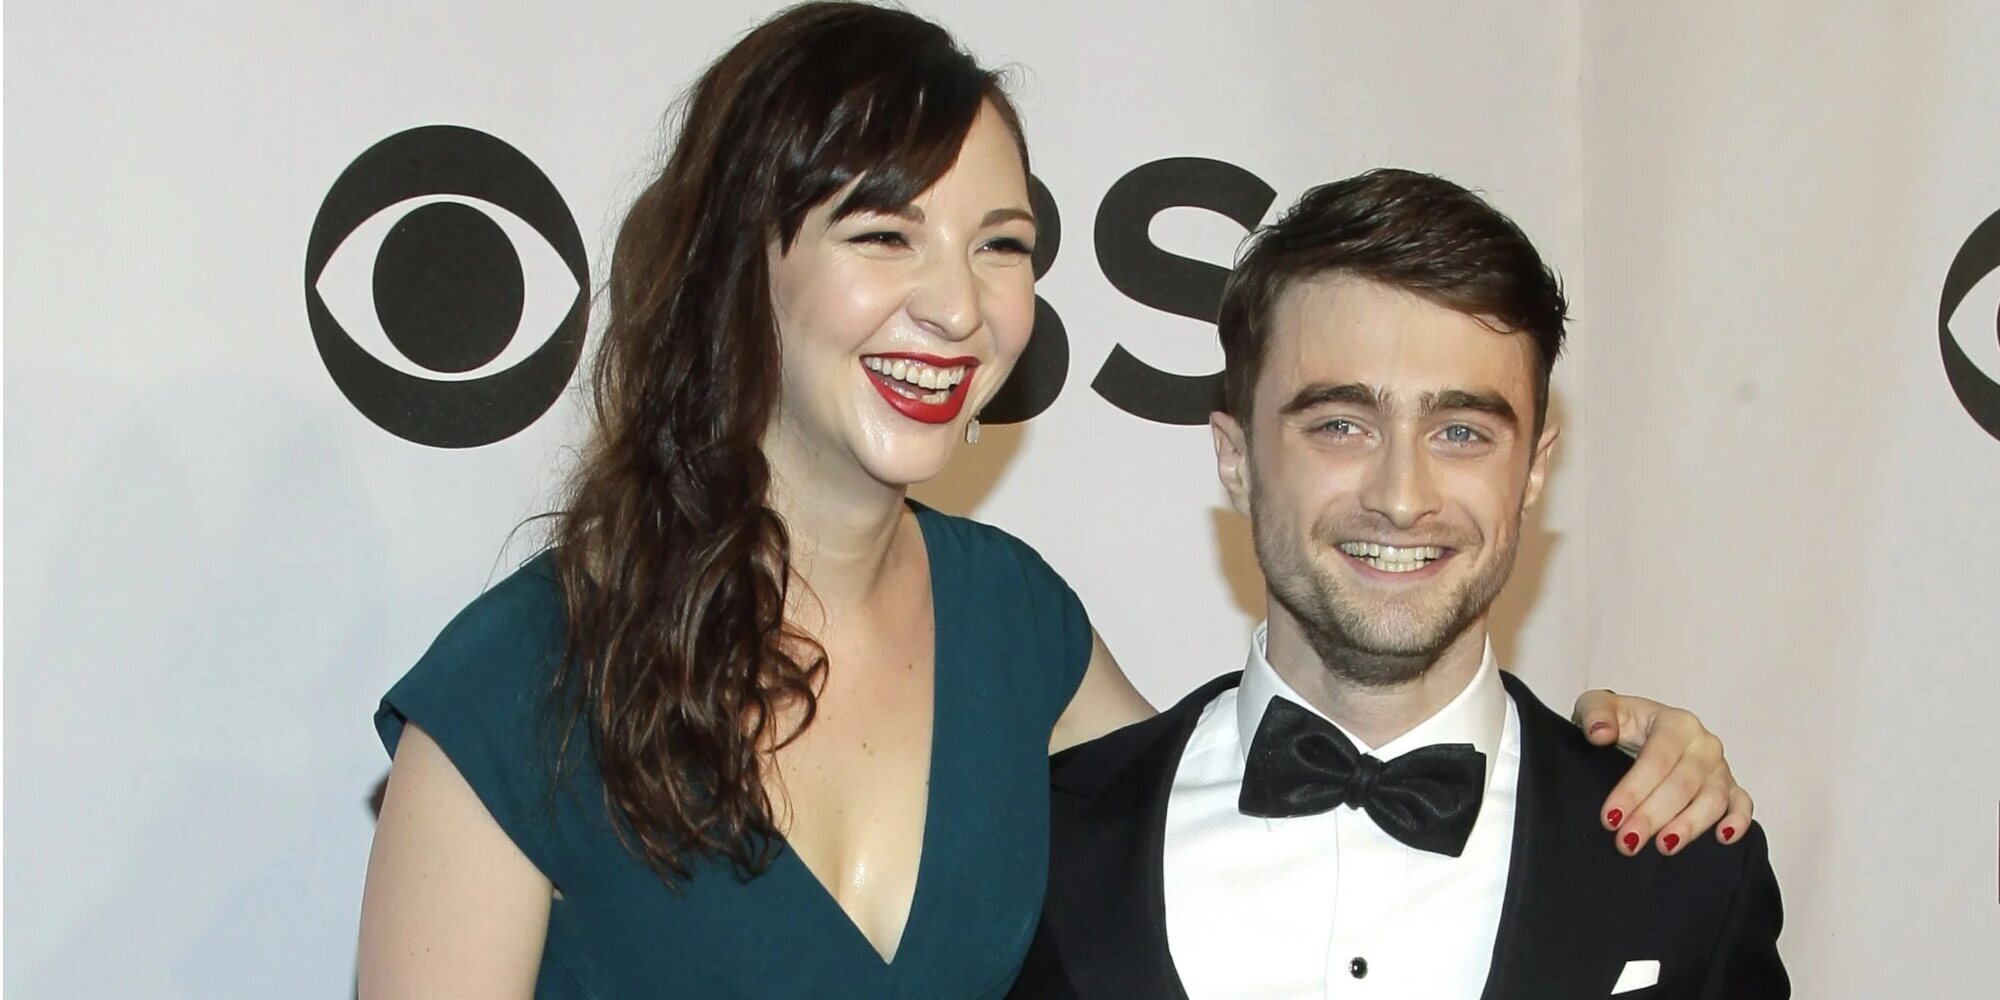 Daniel Radcliffe y Erin Darke esperan su primer hijo